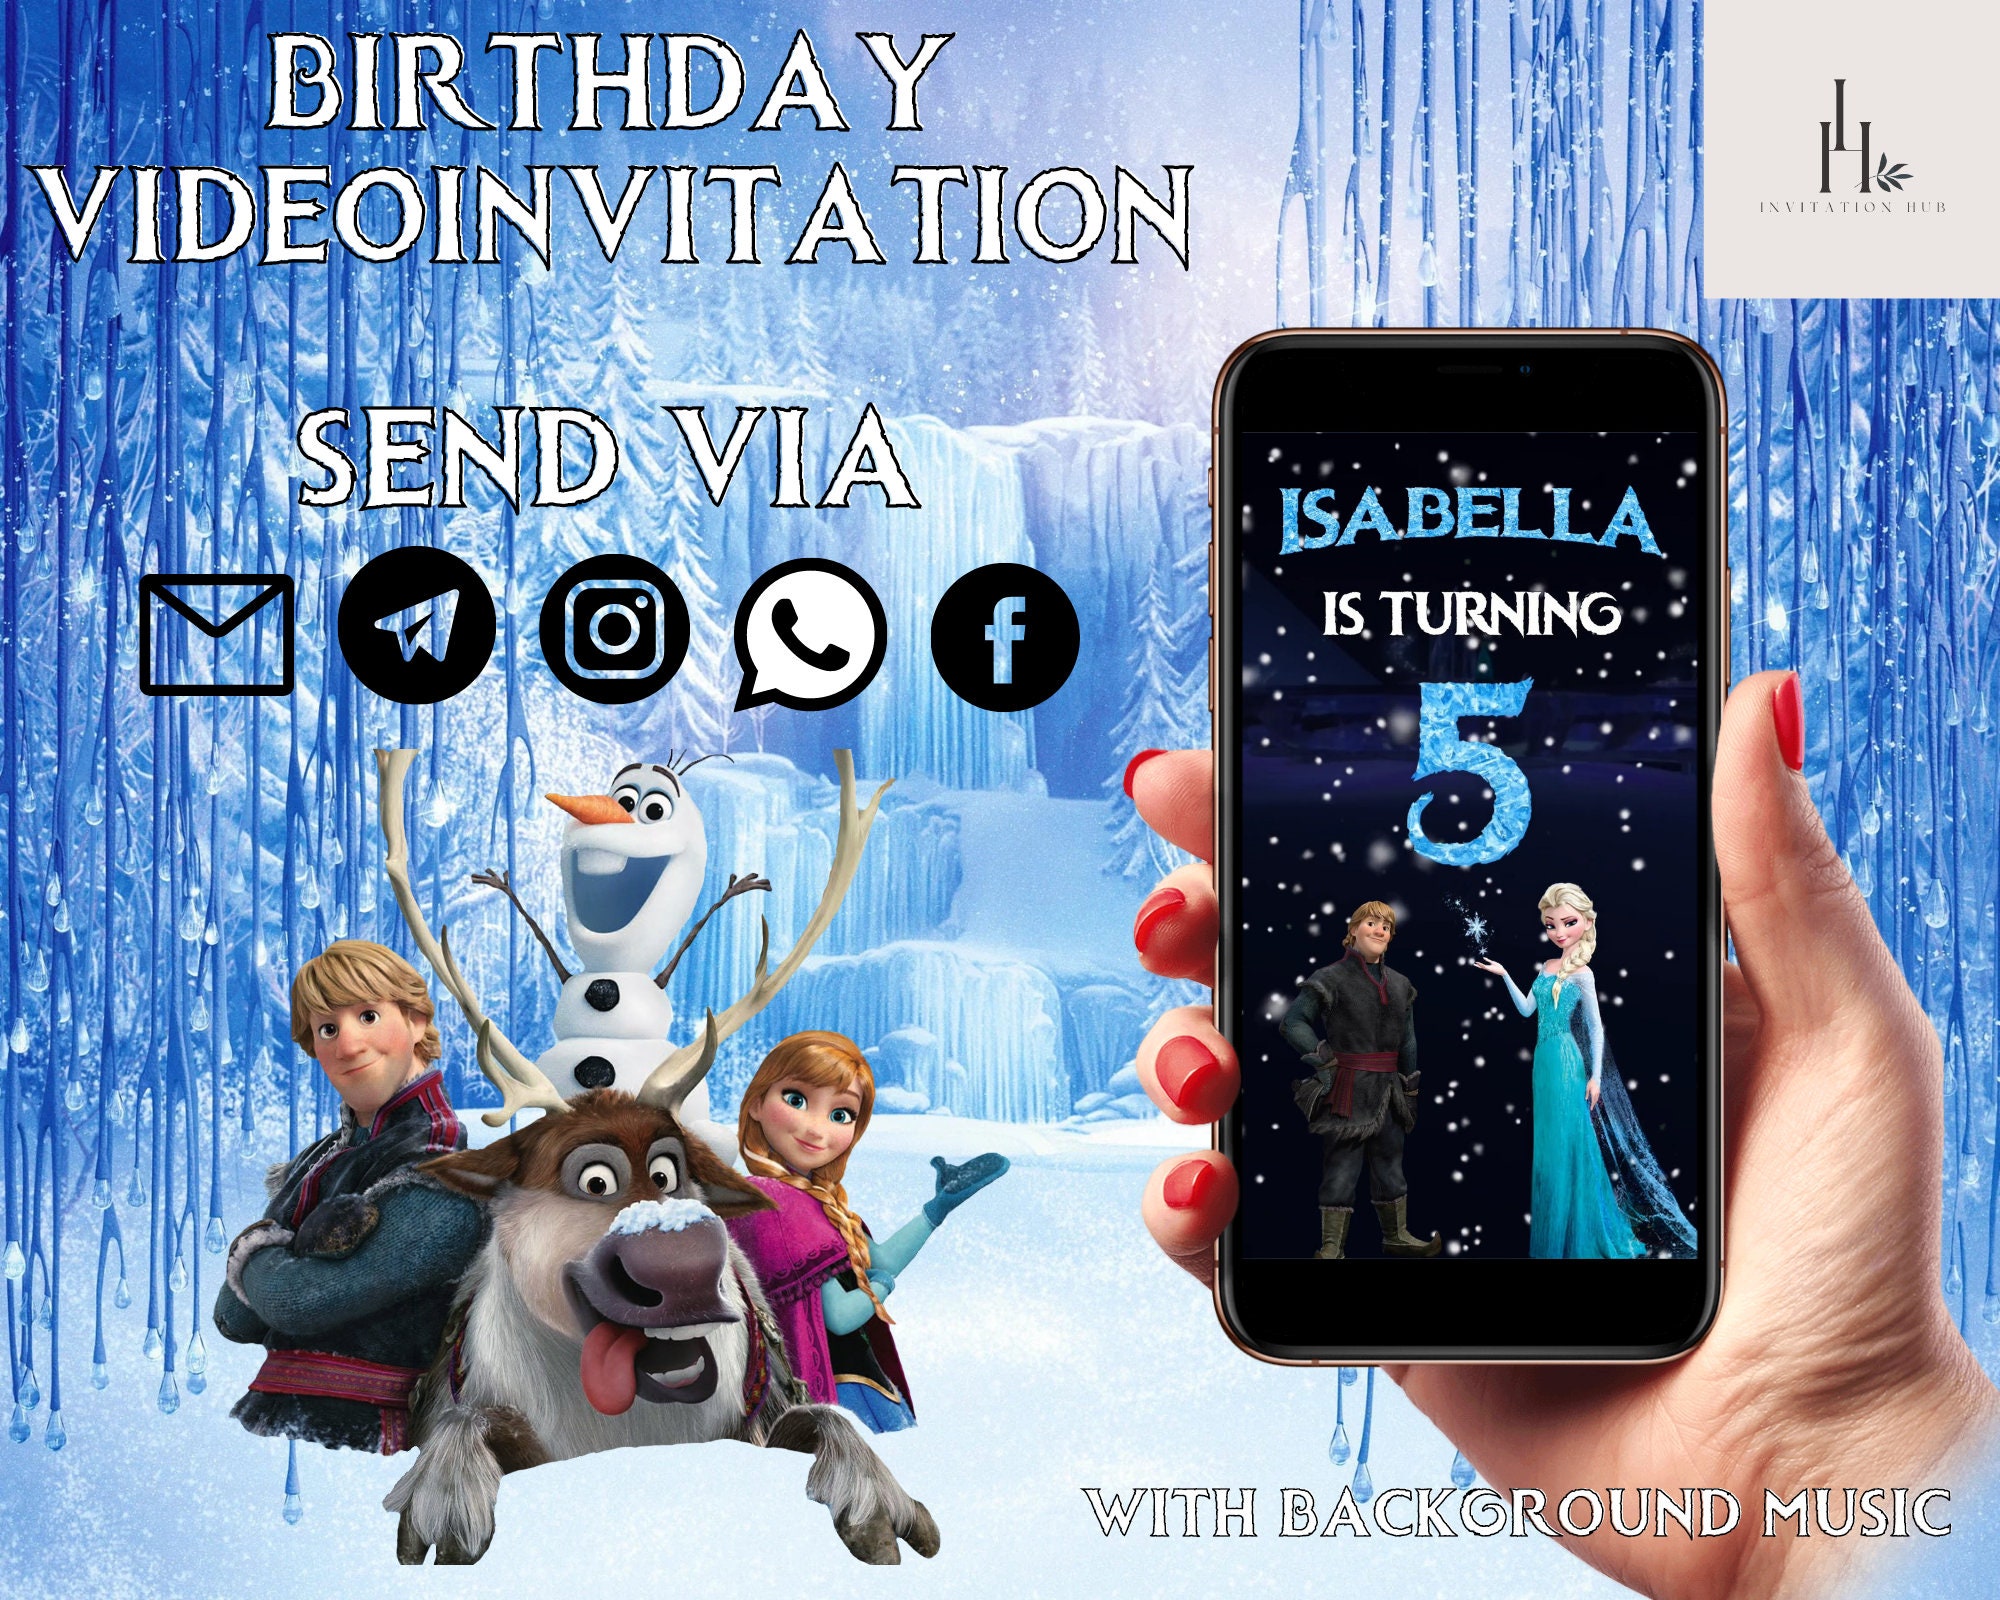 Thiết kế thiệp sinh nhật Frozen thật ngộ nghĩnh và đáng yêu cho bé yêu của bạn. Nhấn vào hình ảnh để khám phá vô vàn những ý tưởng và mẫu thiệp sinh nhật phong cách Frozen cực xinh đẹp.